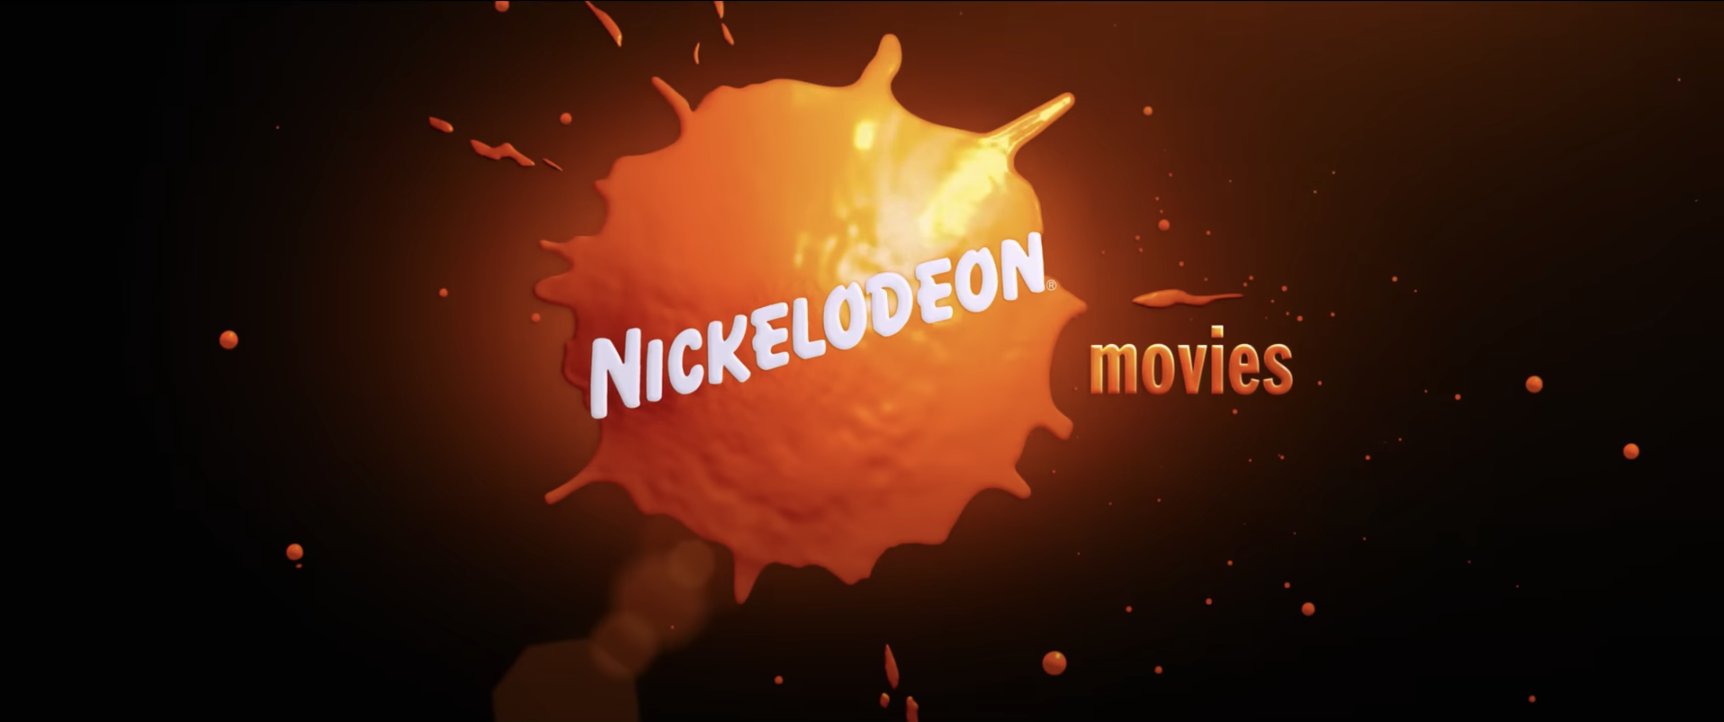 NickALive!: Nickelodeon Movies Brings Back Older 'Splat' Logo